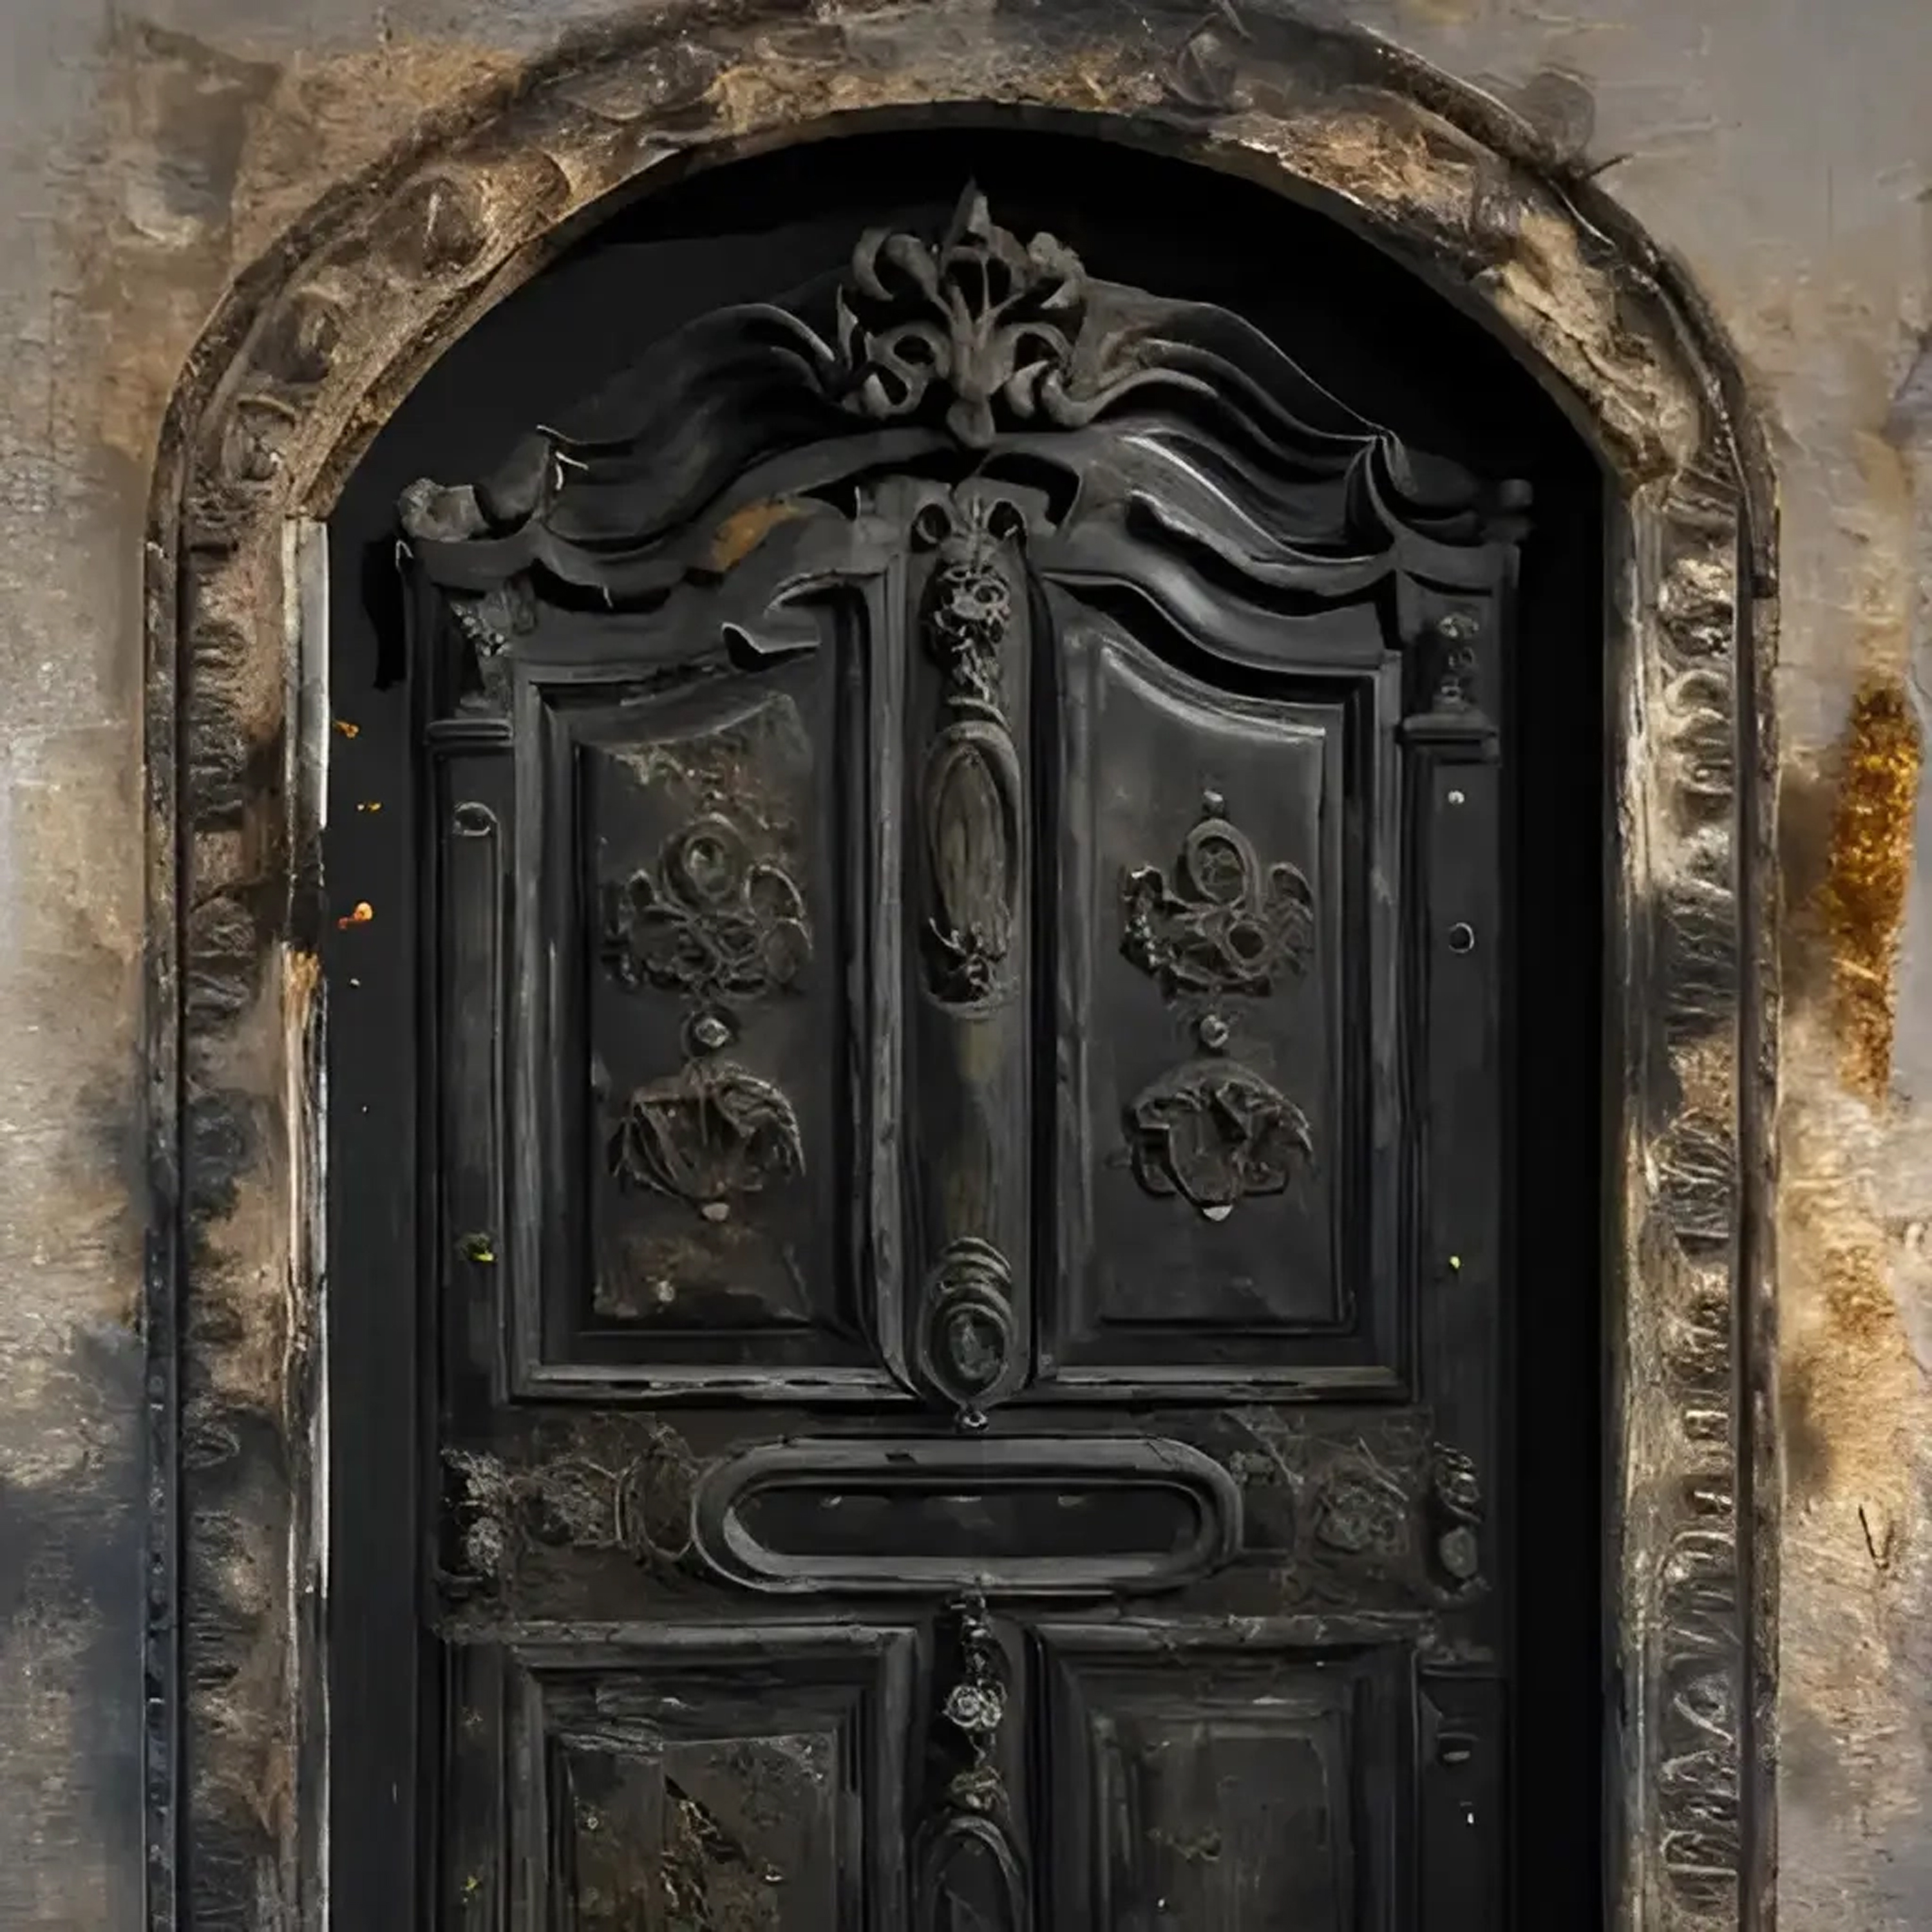 XXII - The door of XNLKX